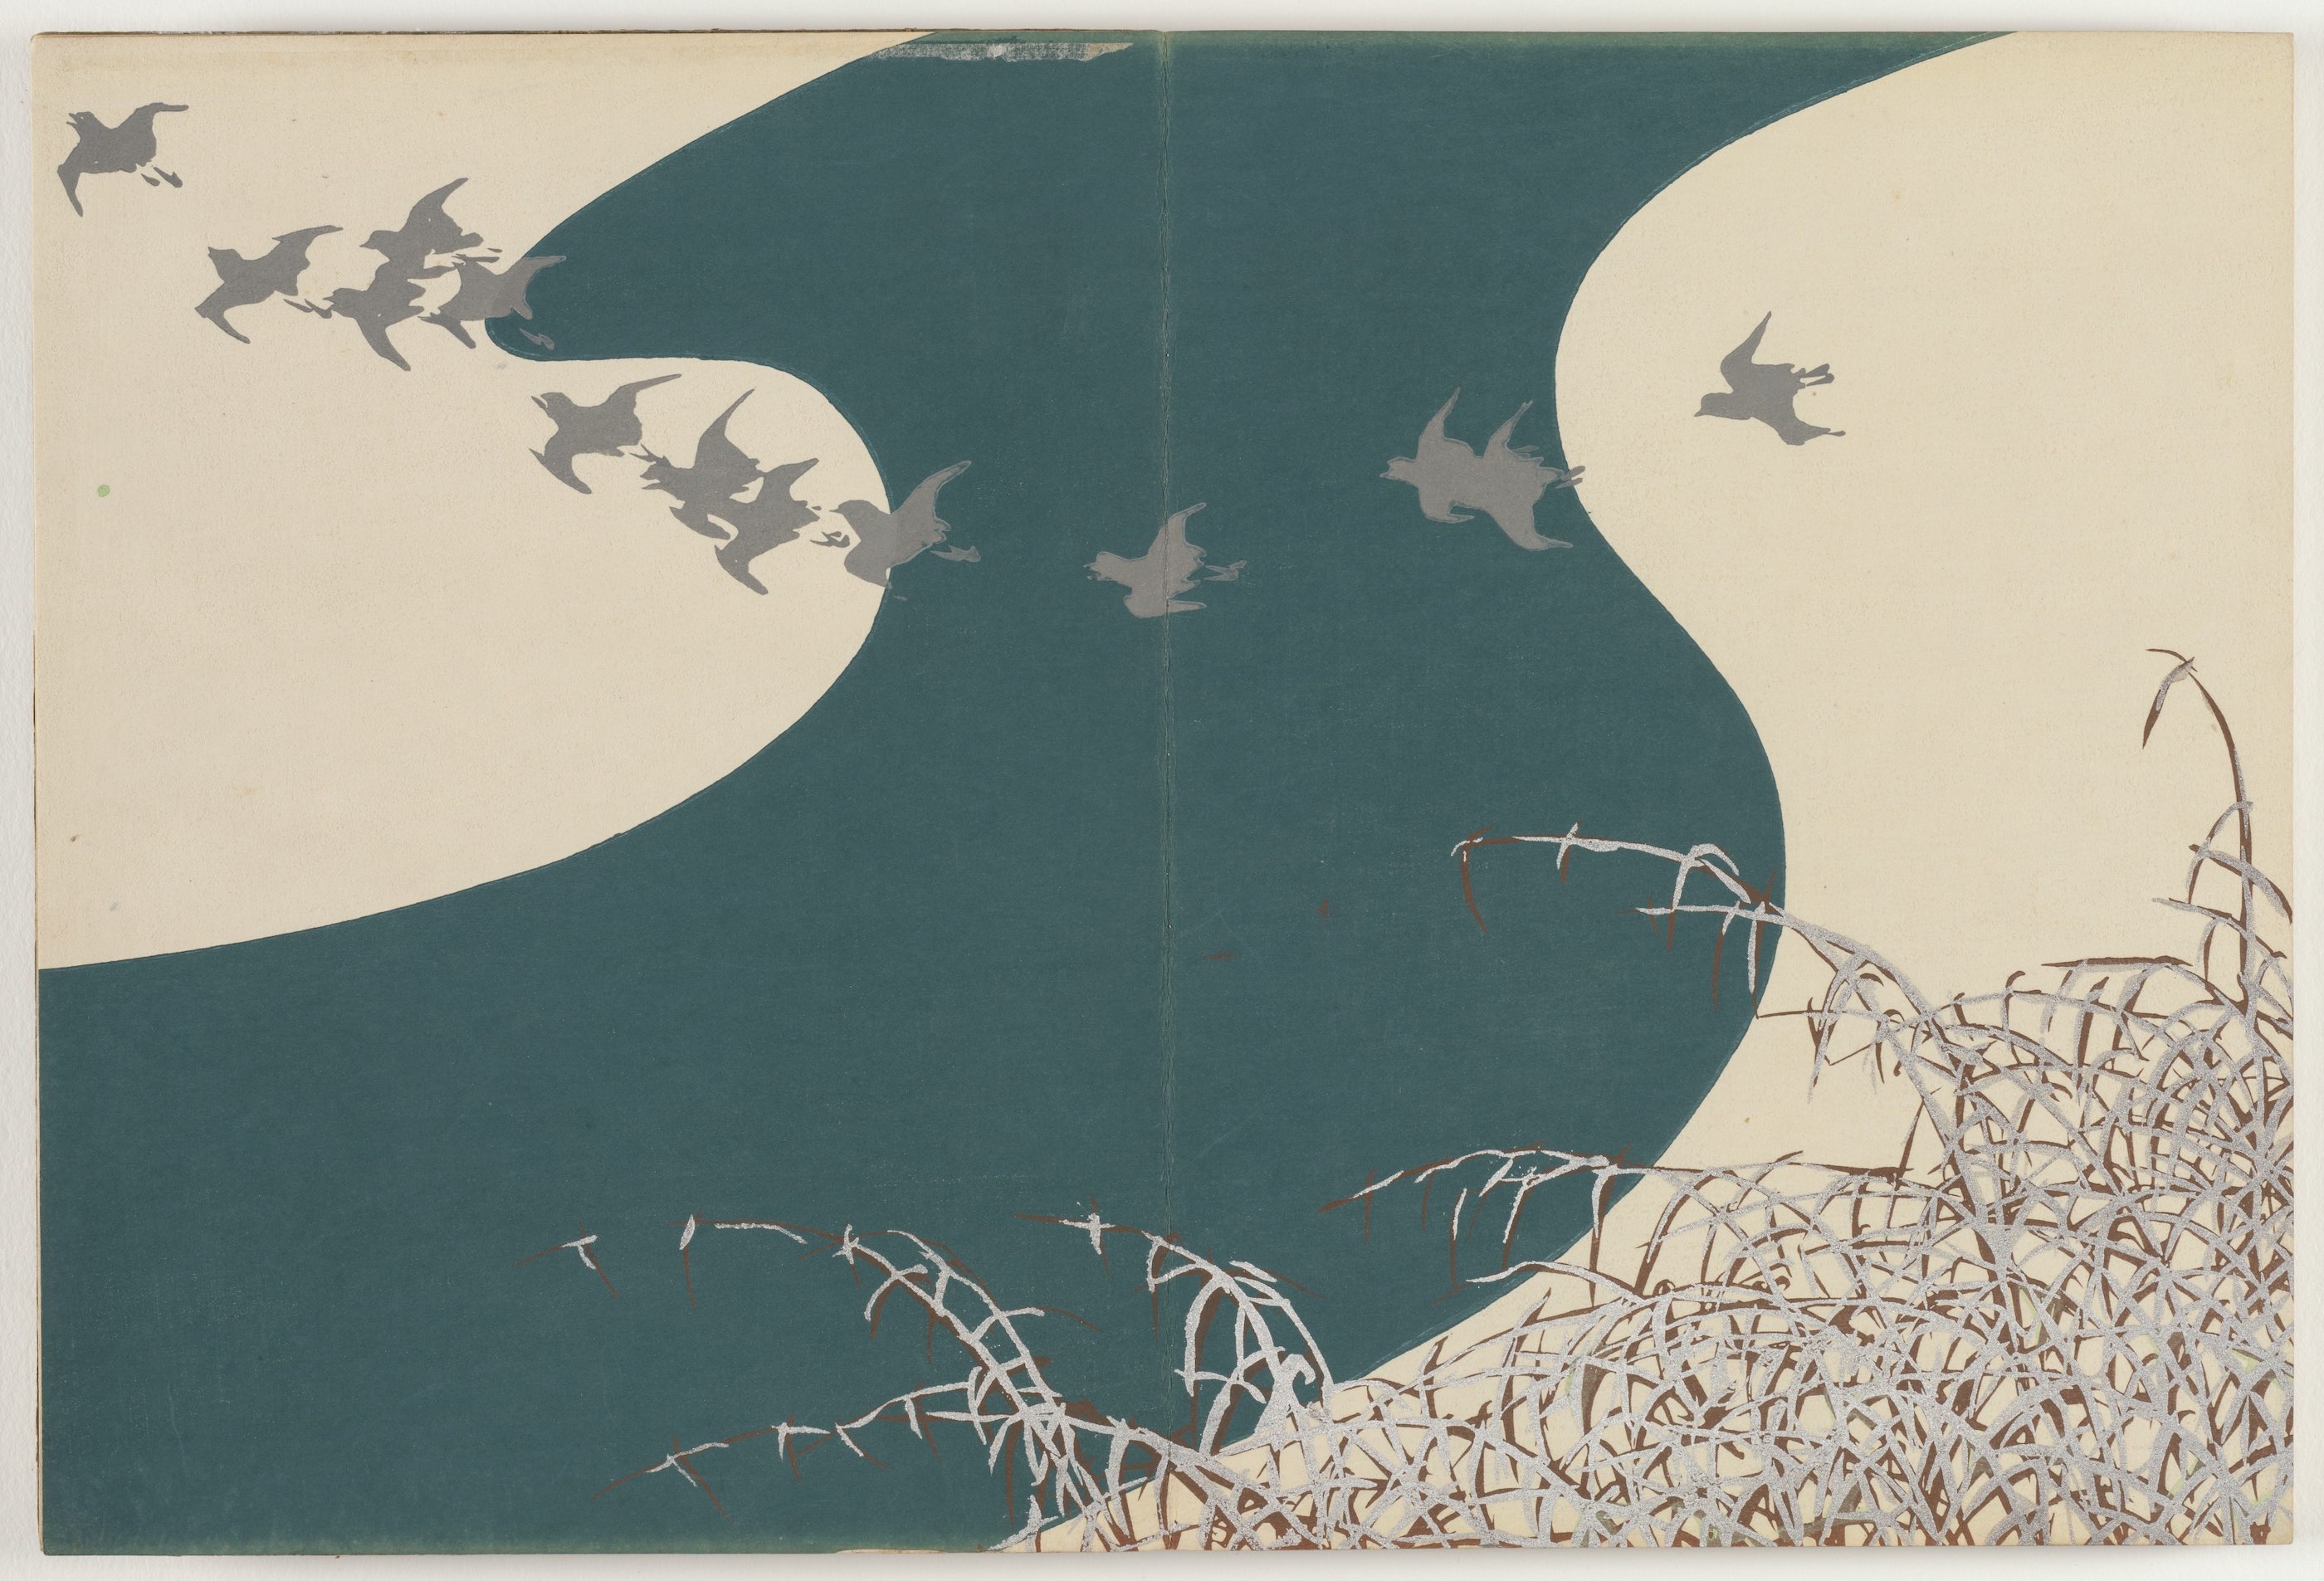 Bloemen van honderd werelden: rivier in de winter by Kamisaka Sekka - 1909–10 - 29,9 x 22,1 cm 